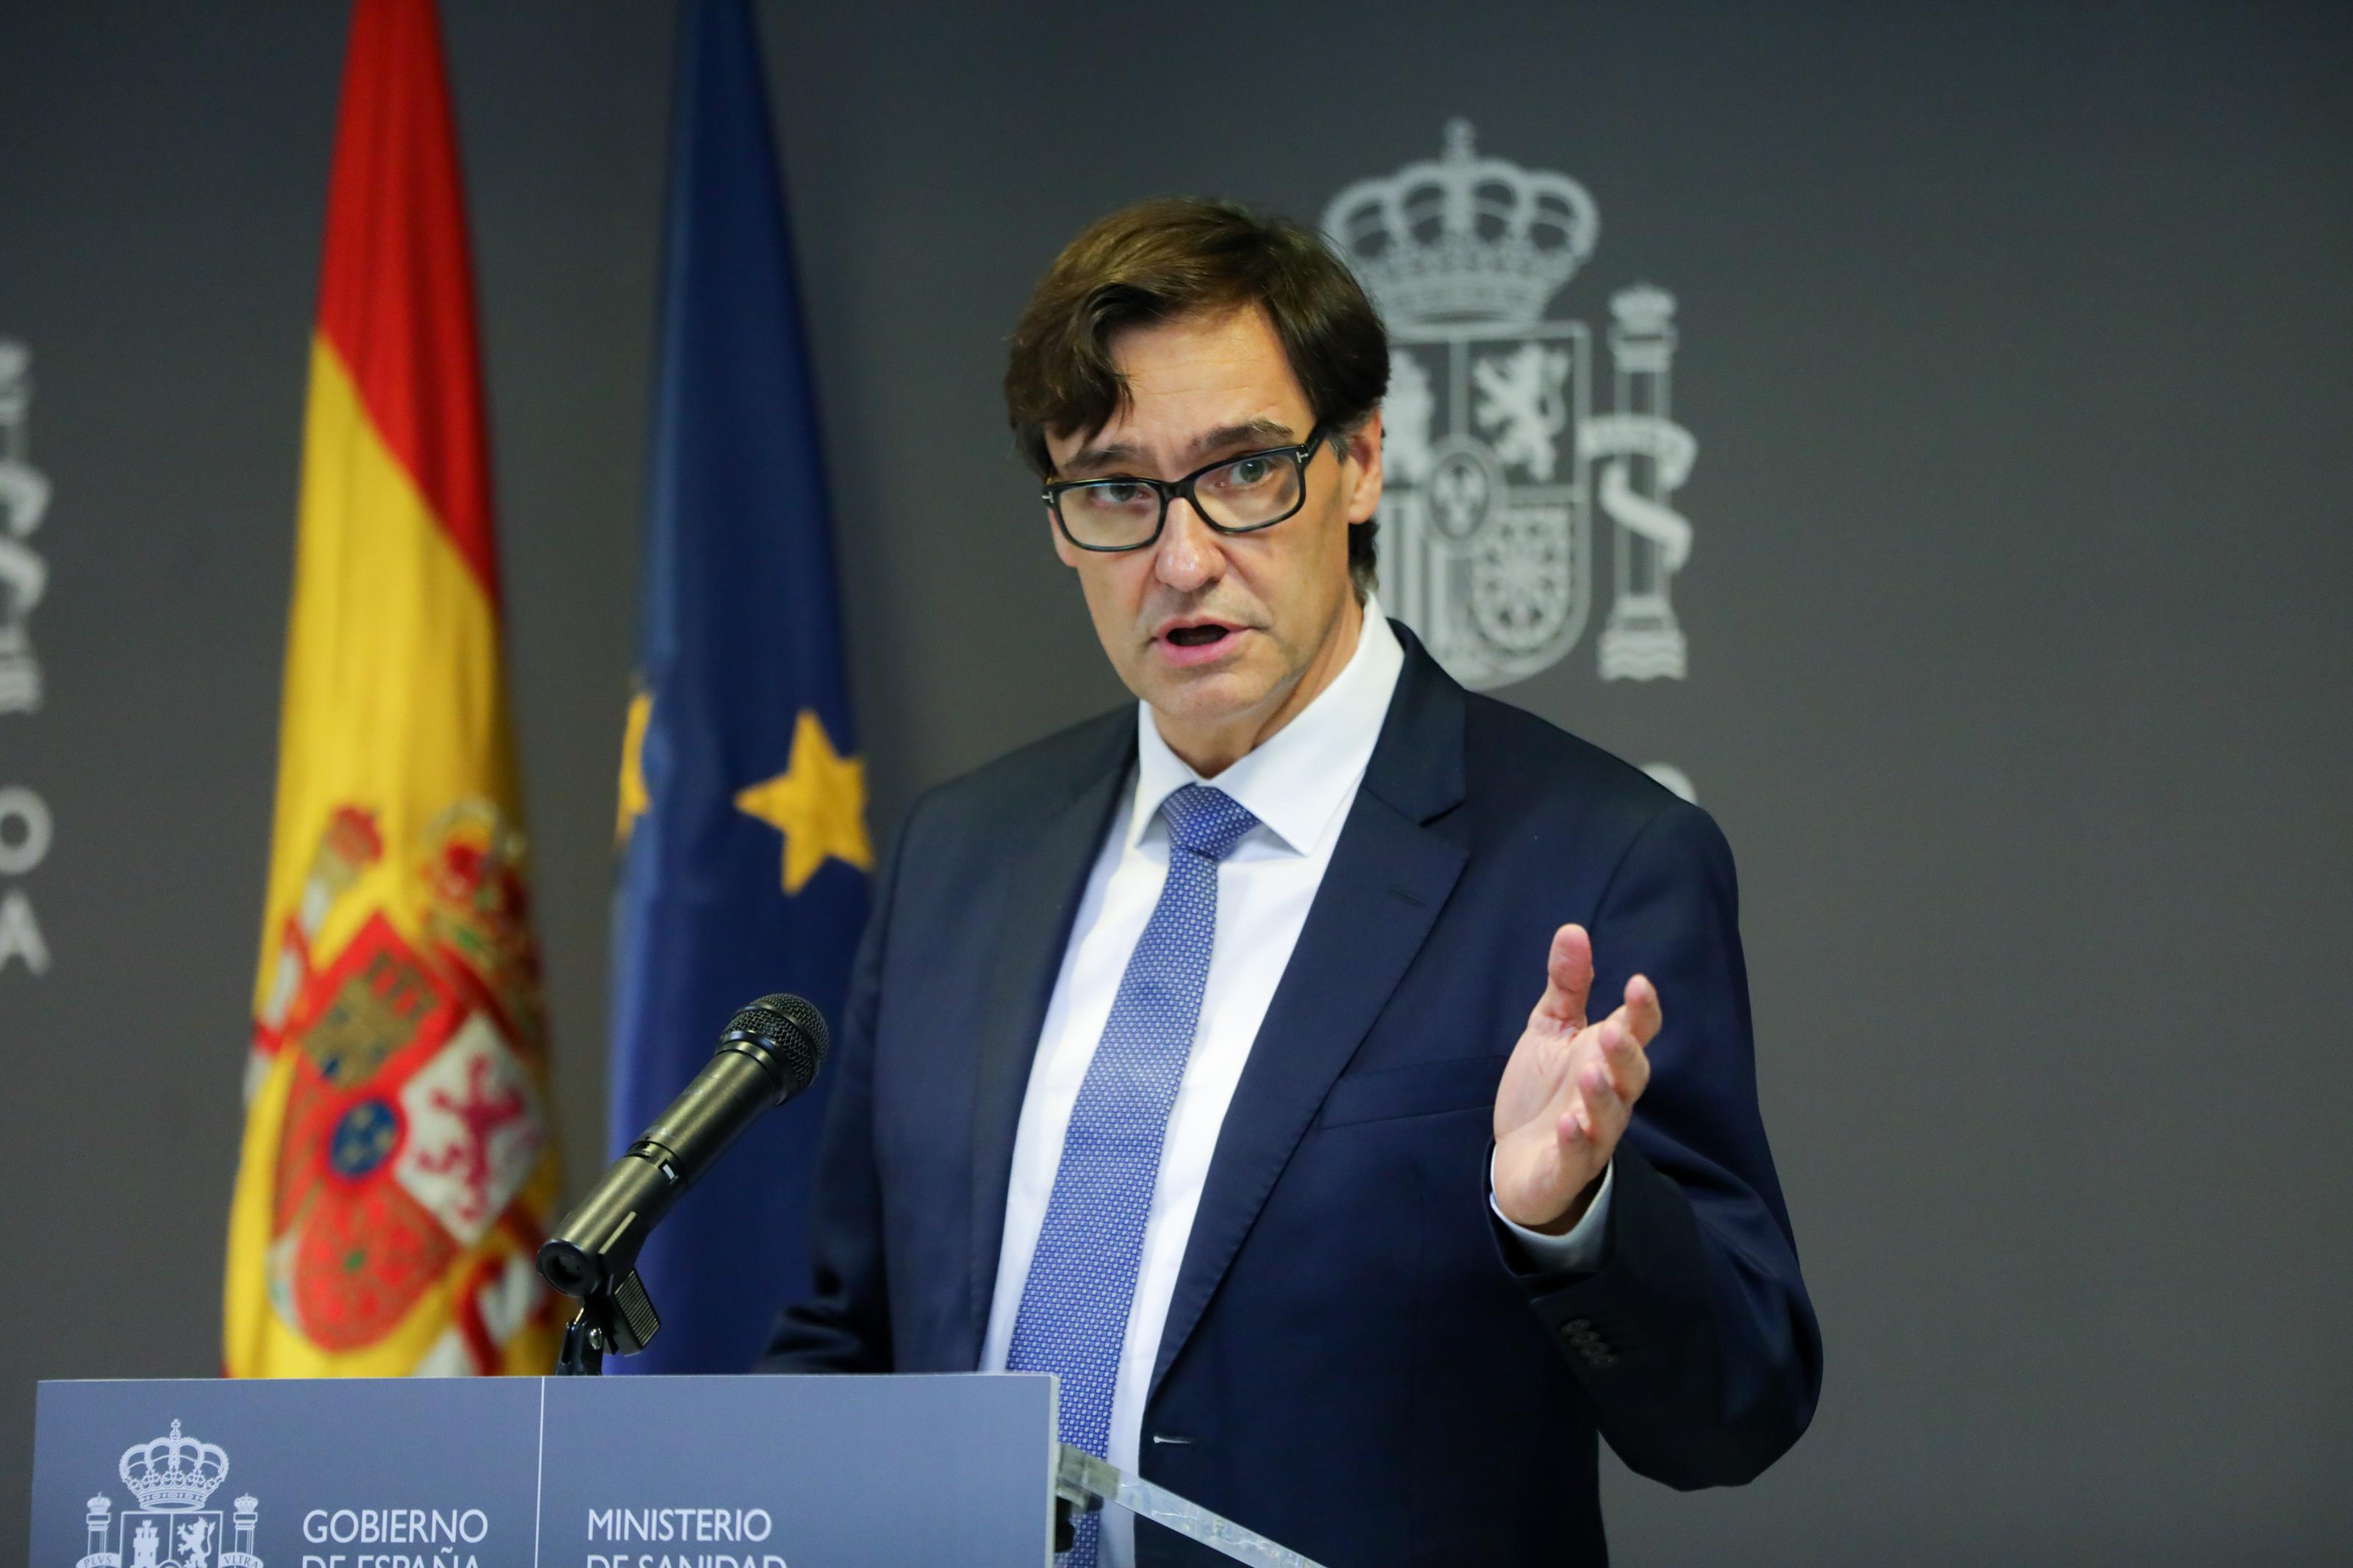 El ministro de Sanidad Salvador Illa durante la rueda de prensa posterior a la reunión ministerial de evaluación y seguimiento del coronavirus en Madrid. Europa Press